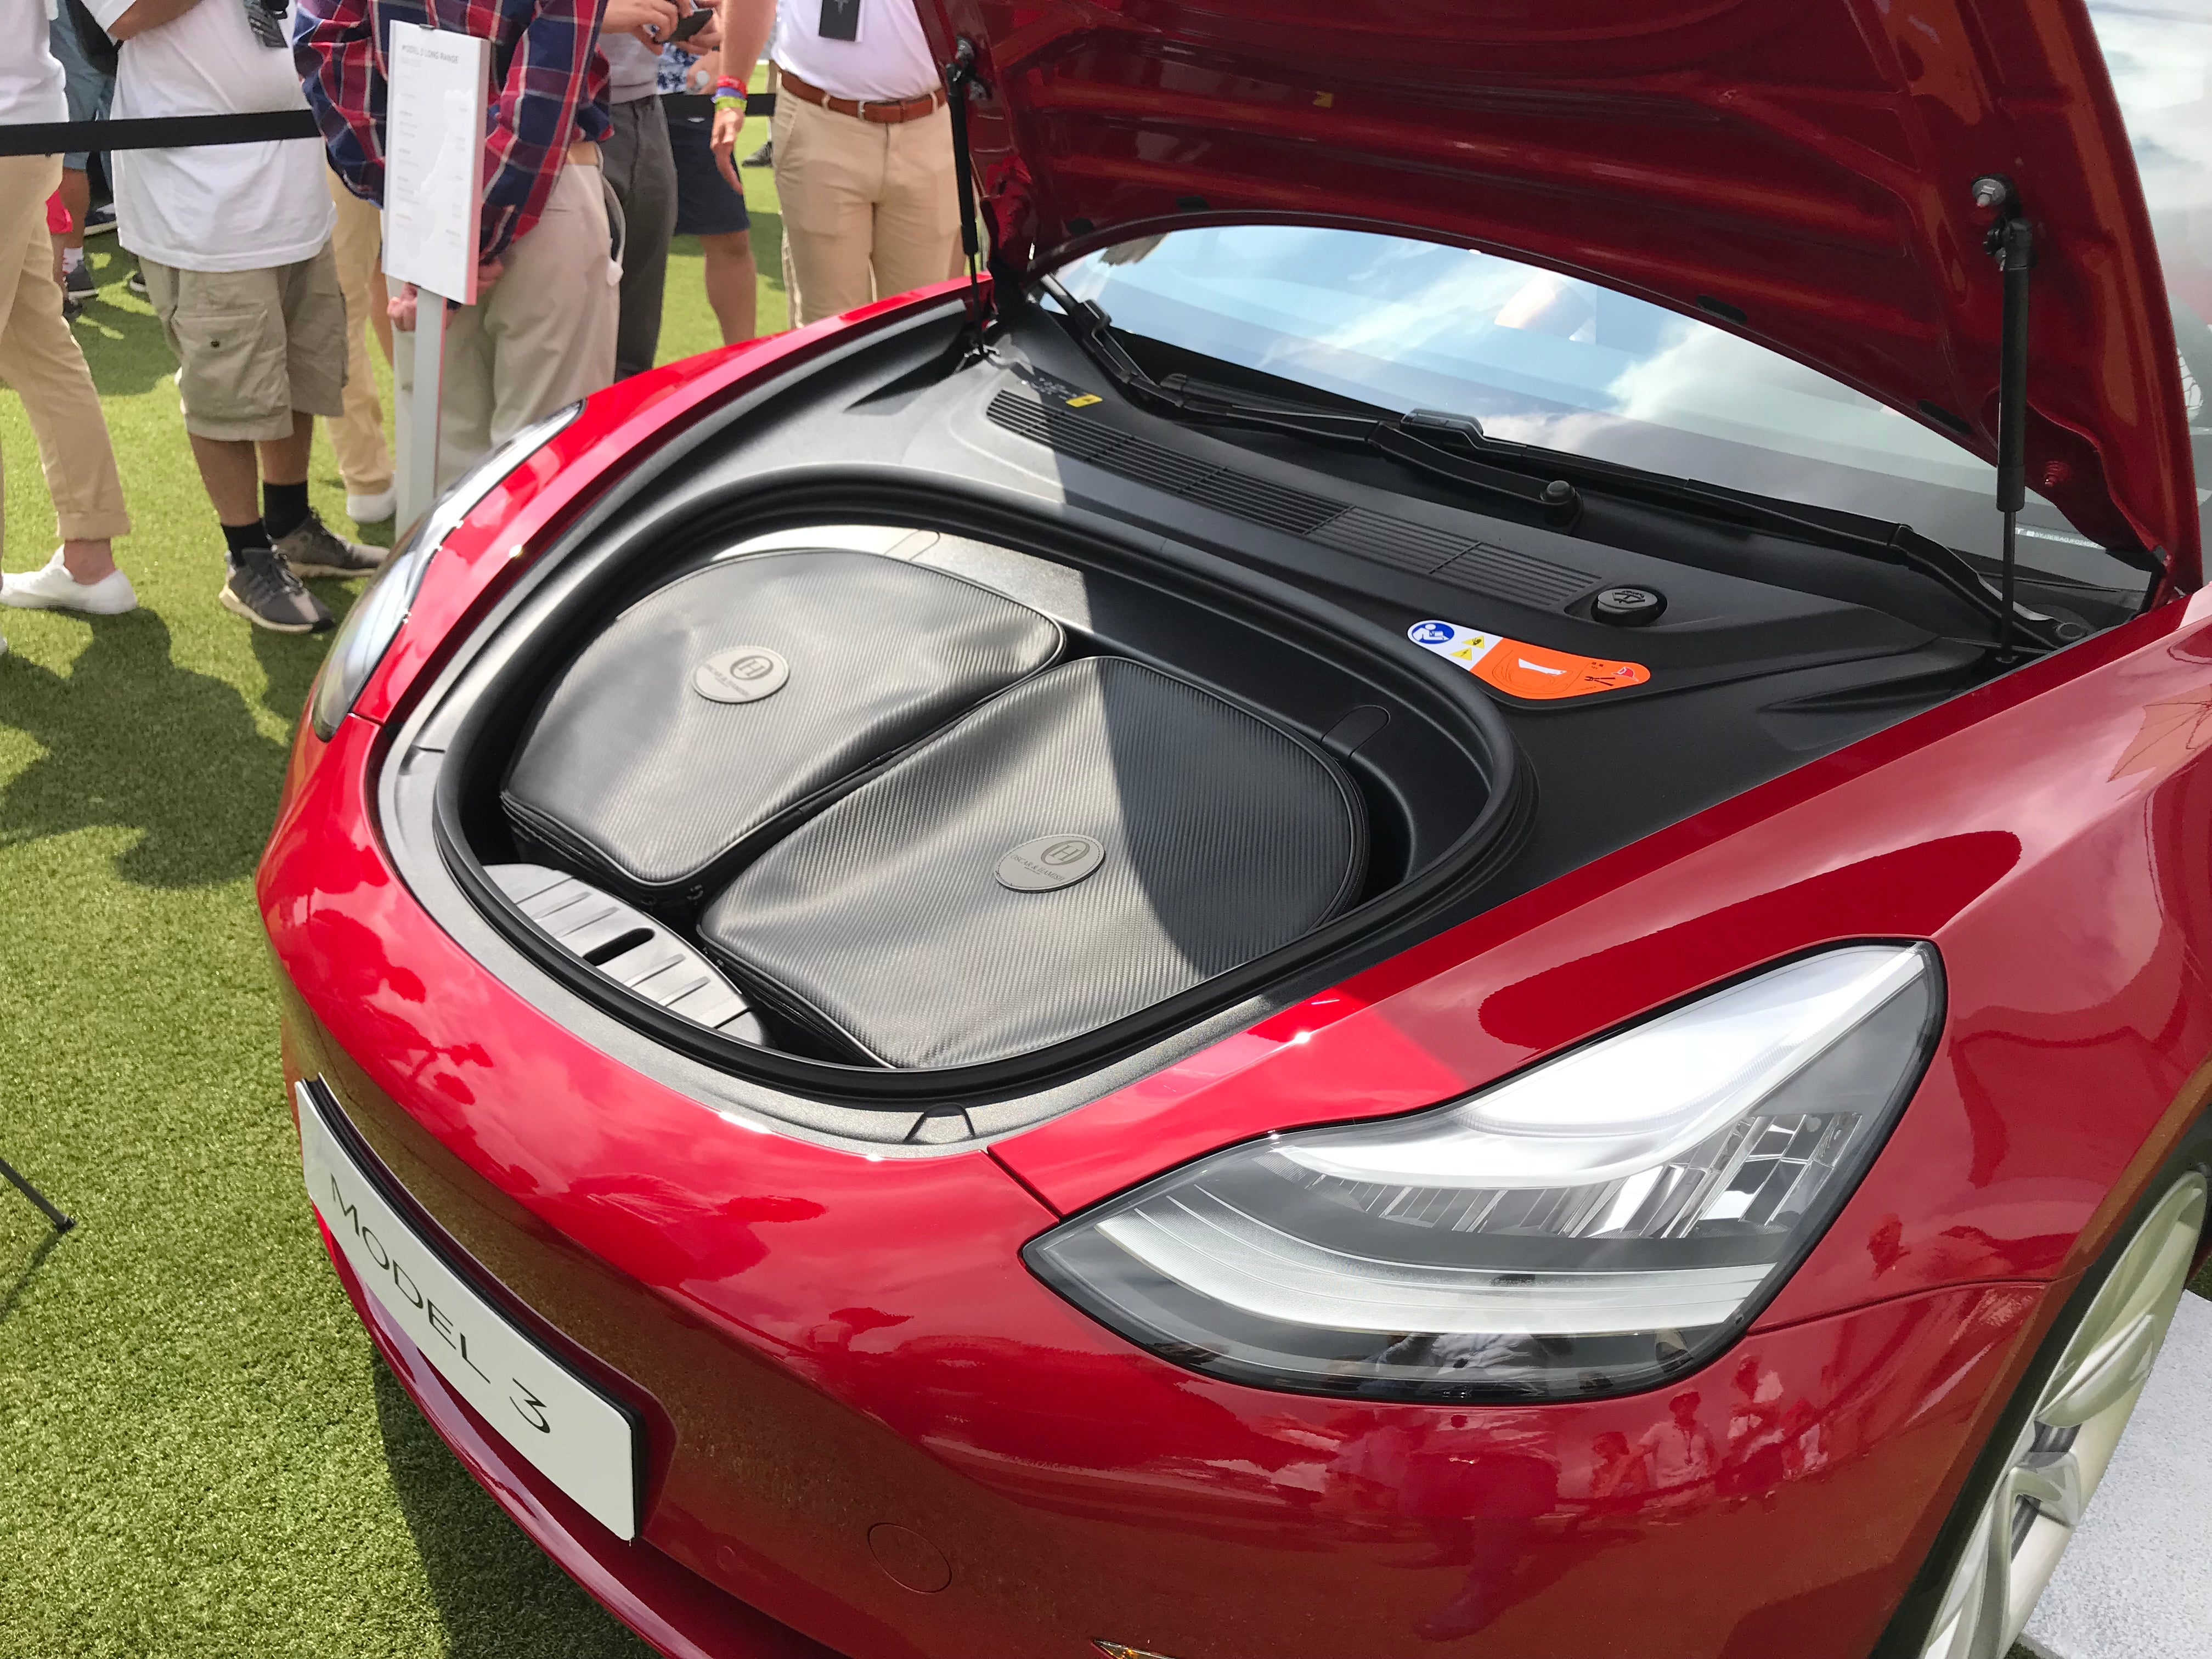 Bagages 2 pièces pour Frunk - Tesla Model 3